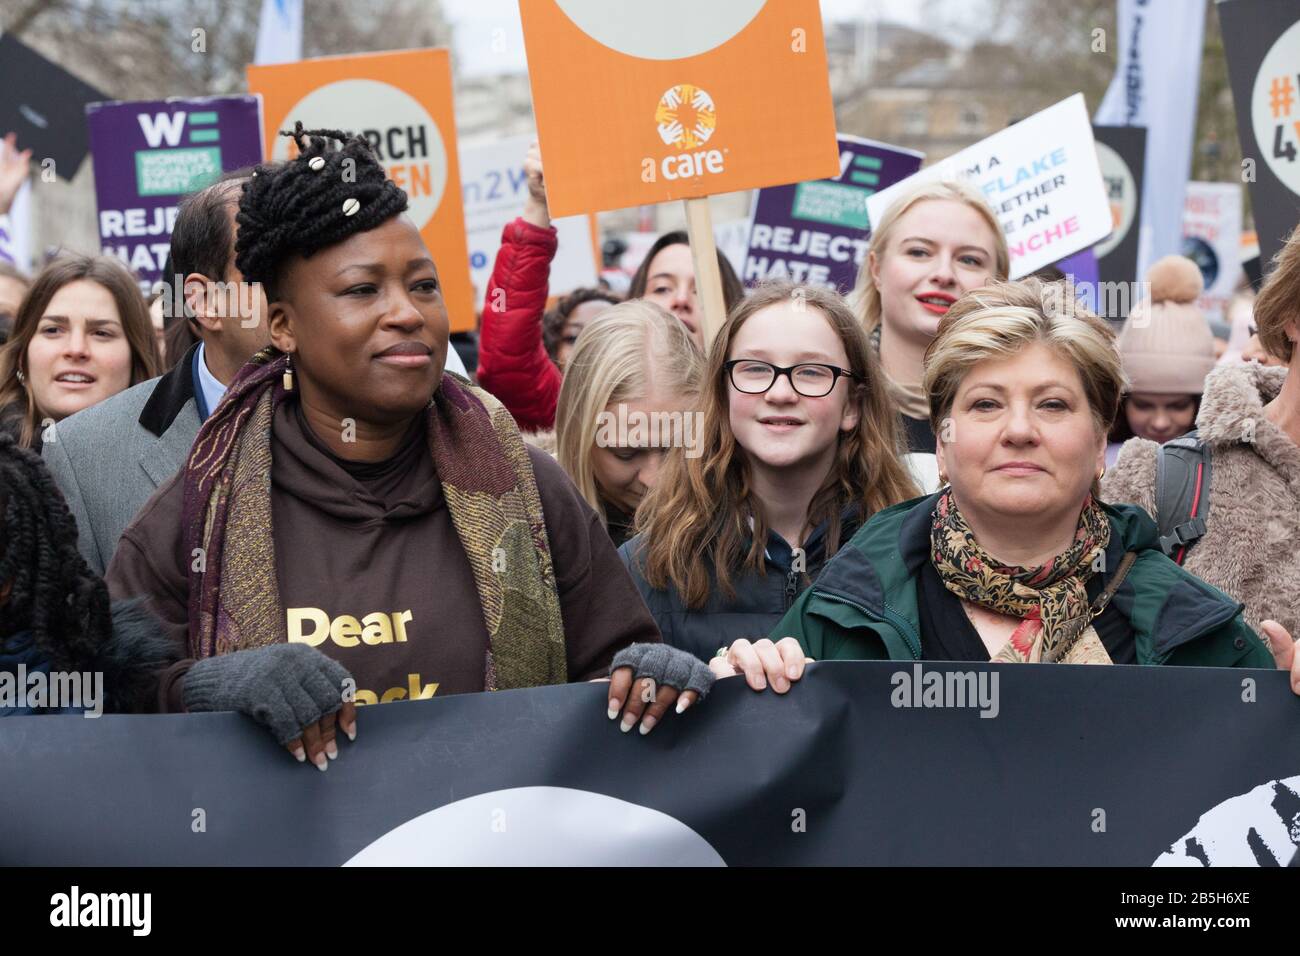 Londres, Royaume-Uni. 8 mars 2020. Des célébrités, des militants et des politiciens se sont joints aux femmes du marché, organisées par Care et le Parti pour l'égalité des femmes, pour marquer la Journée internationale de la femme. Anna Watson/Alay Live News Banque D'Images